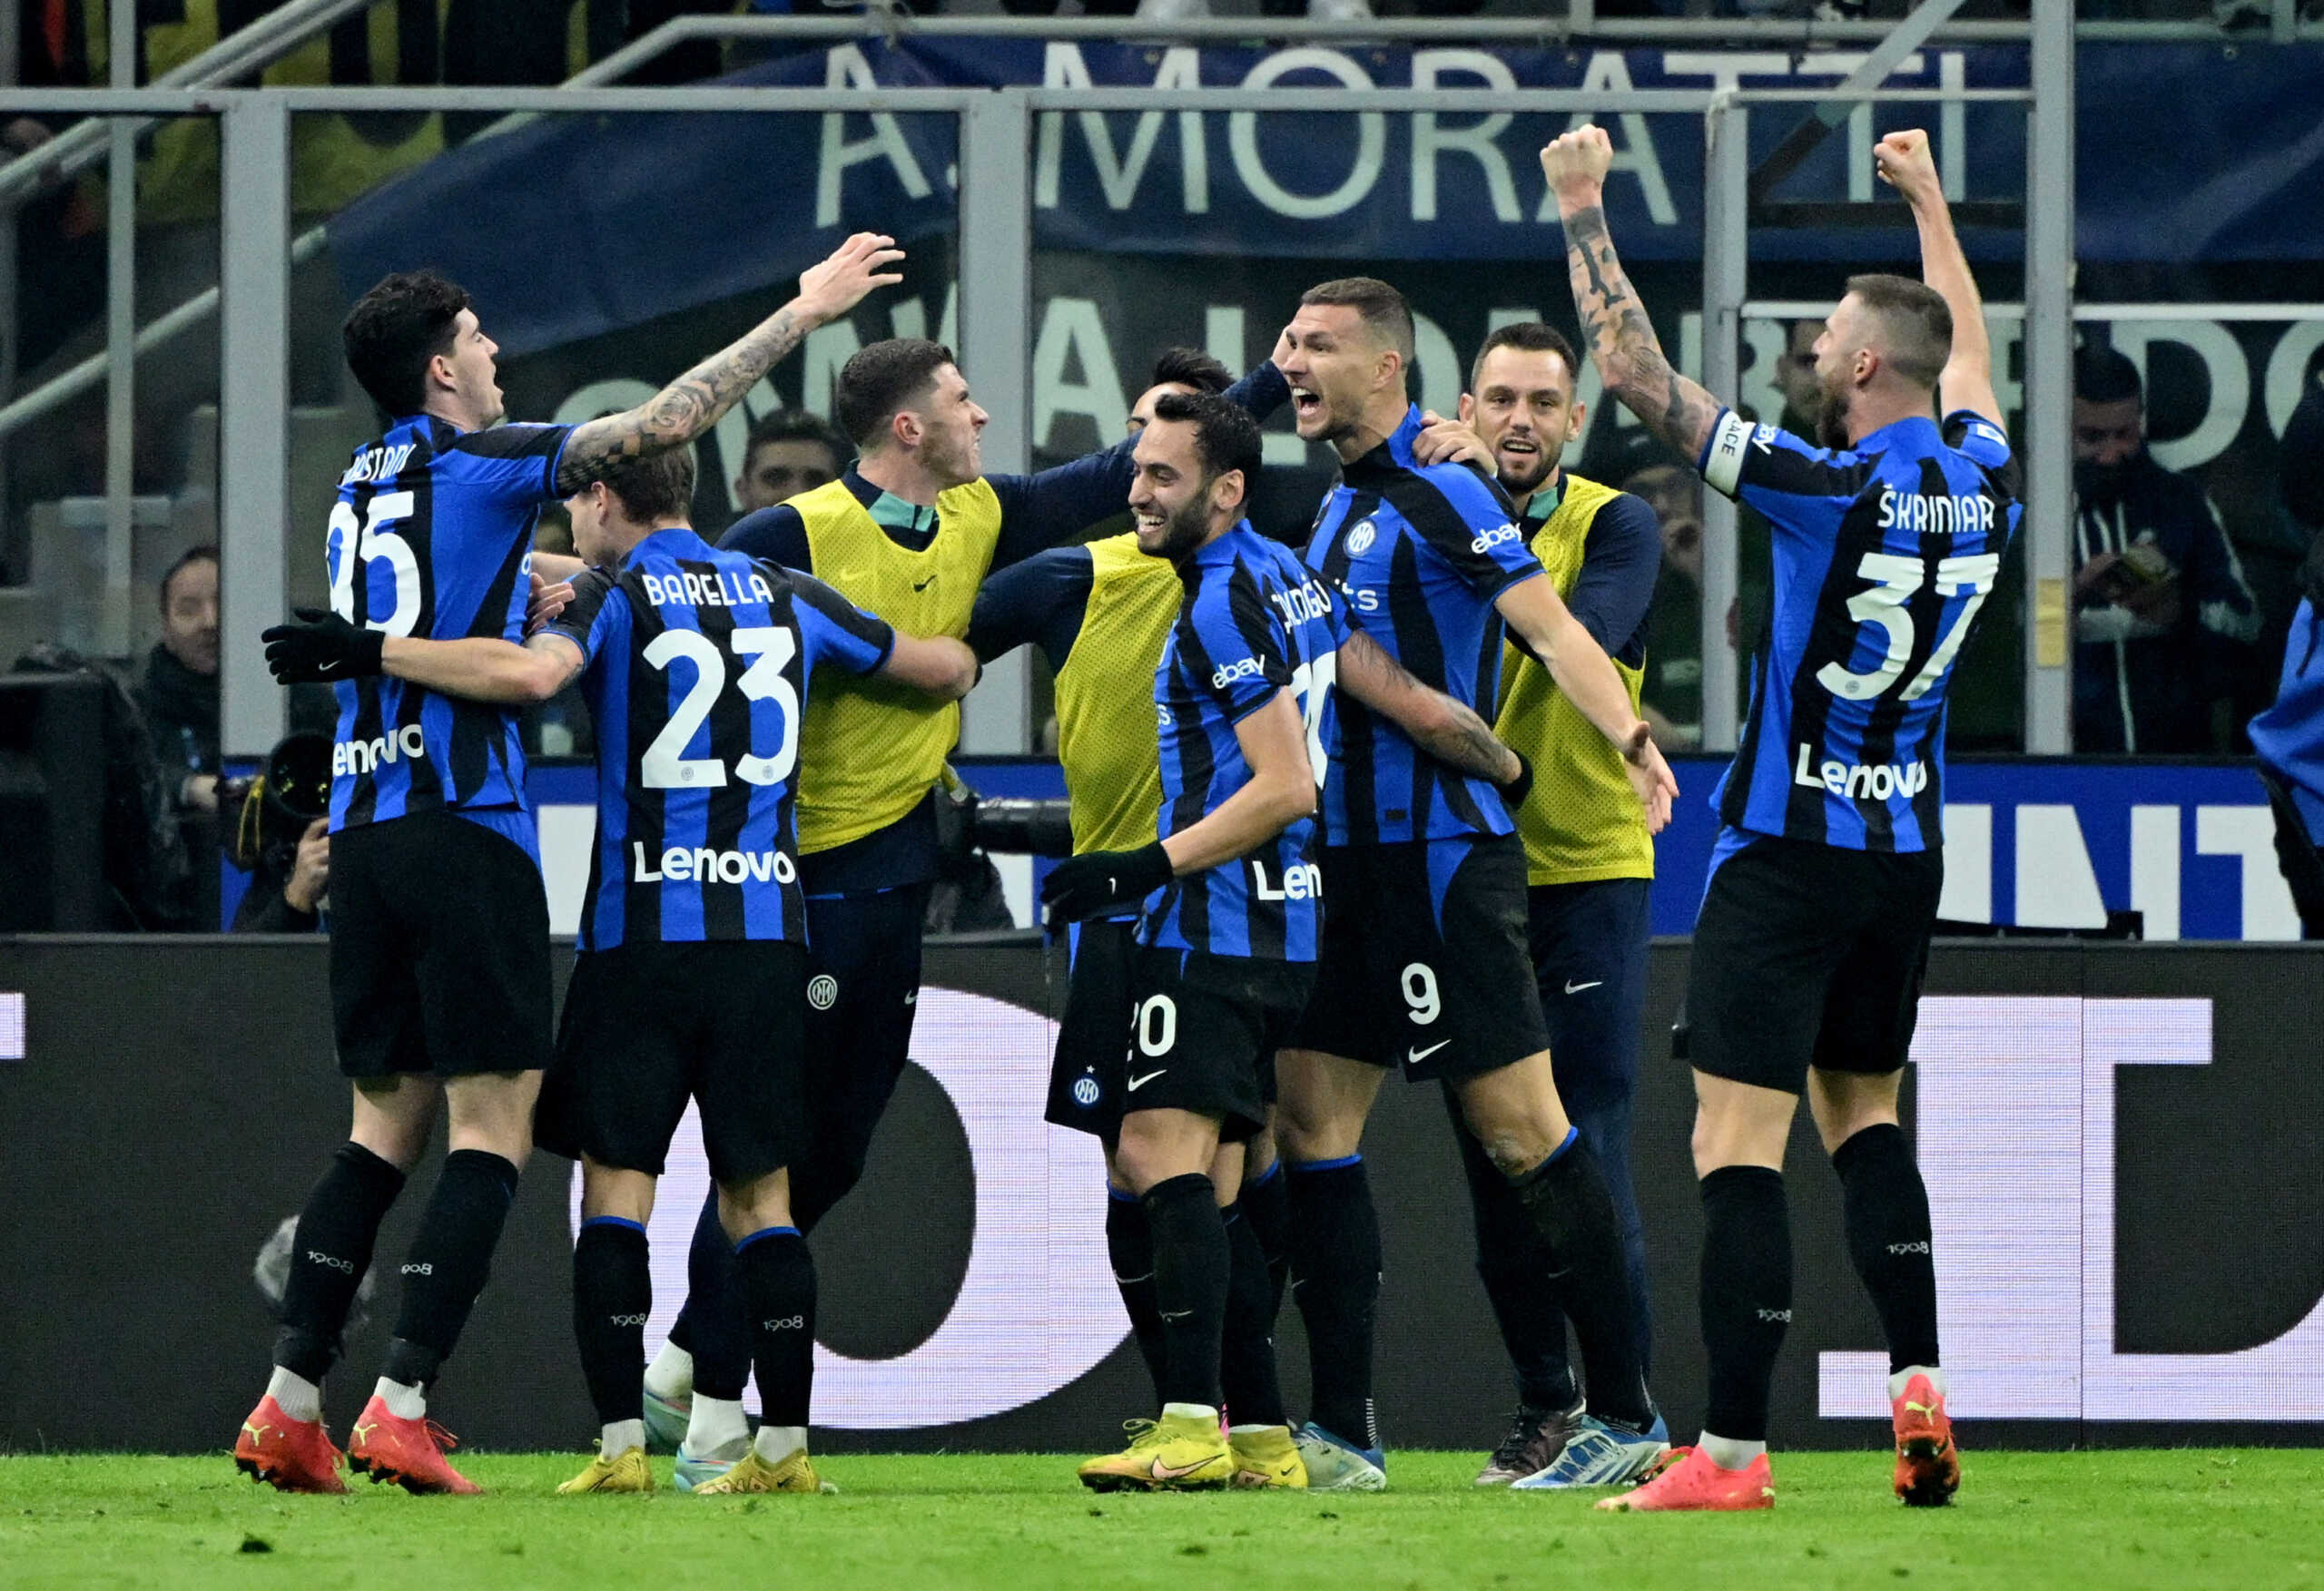 Ίντερ – Νάπολι 1-0: Πρώτη ήττα για τους φιλοξενούμενους στη φετινή Serie A